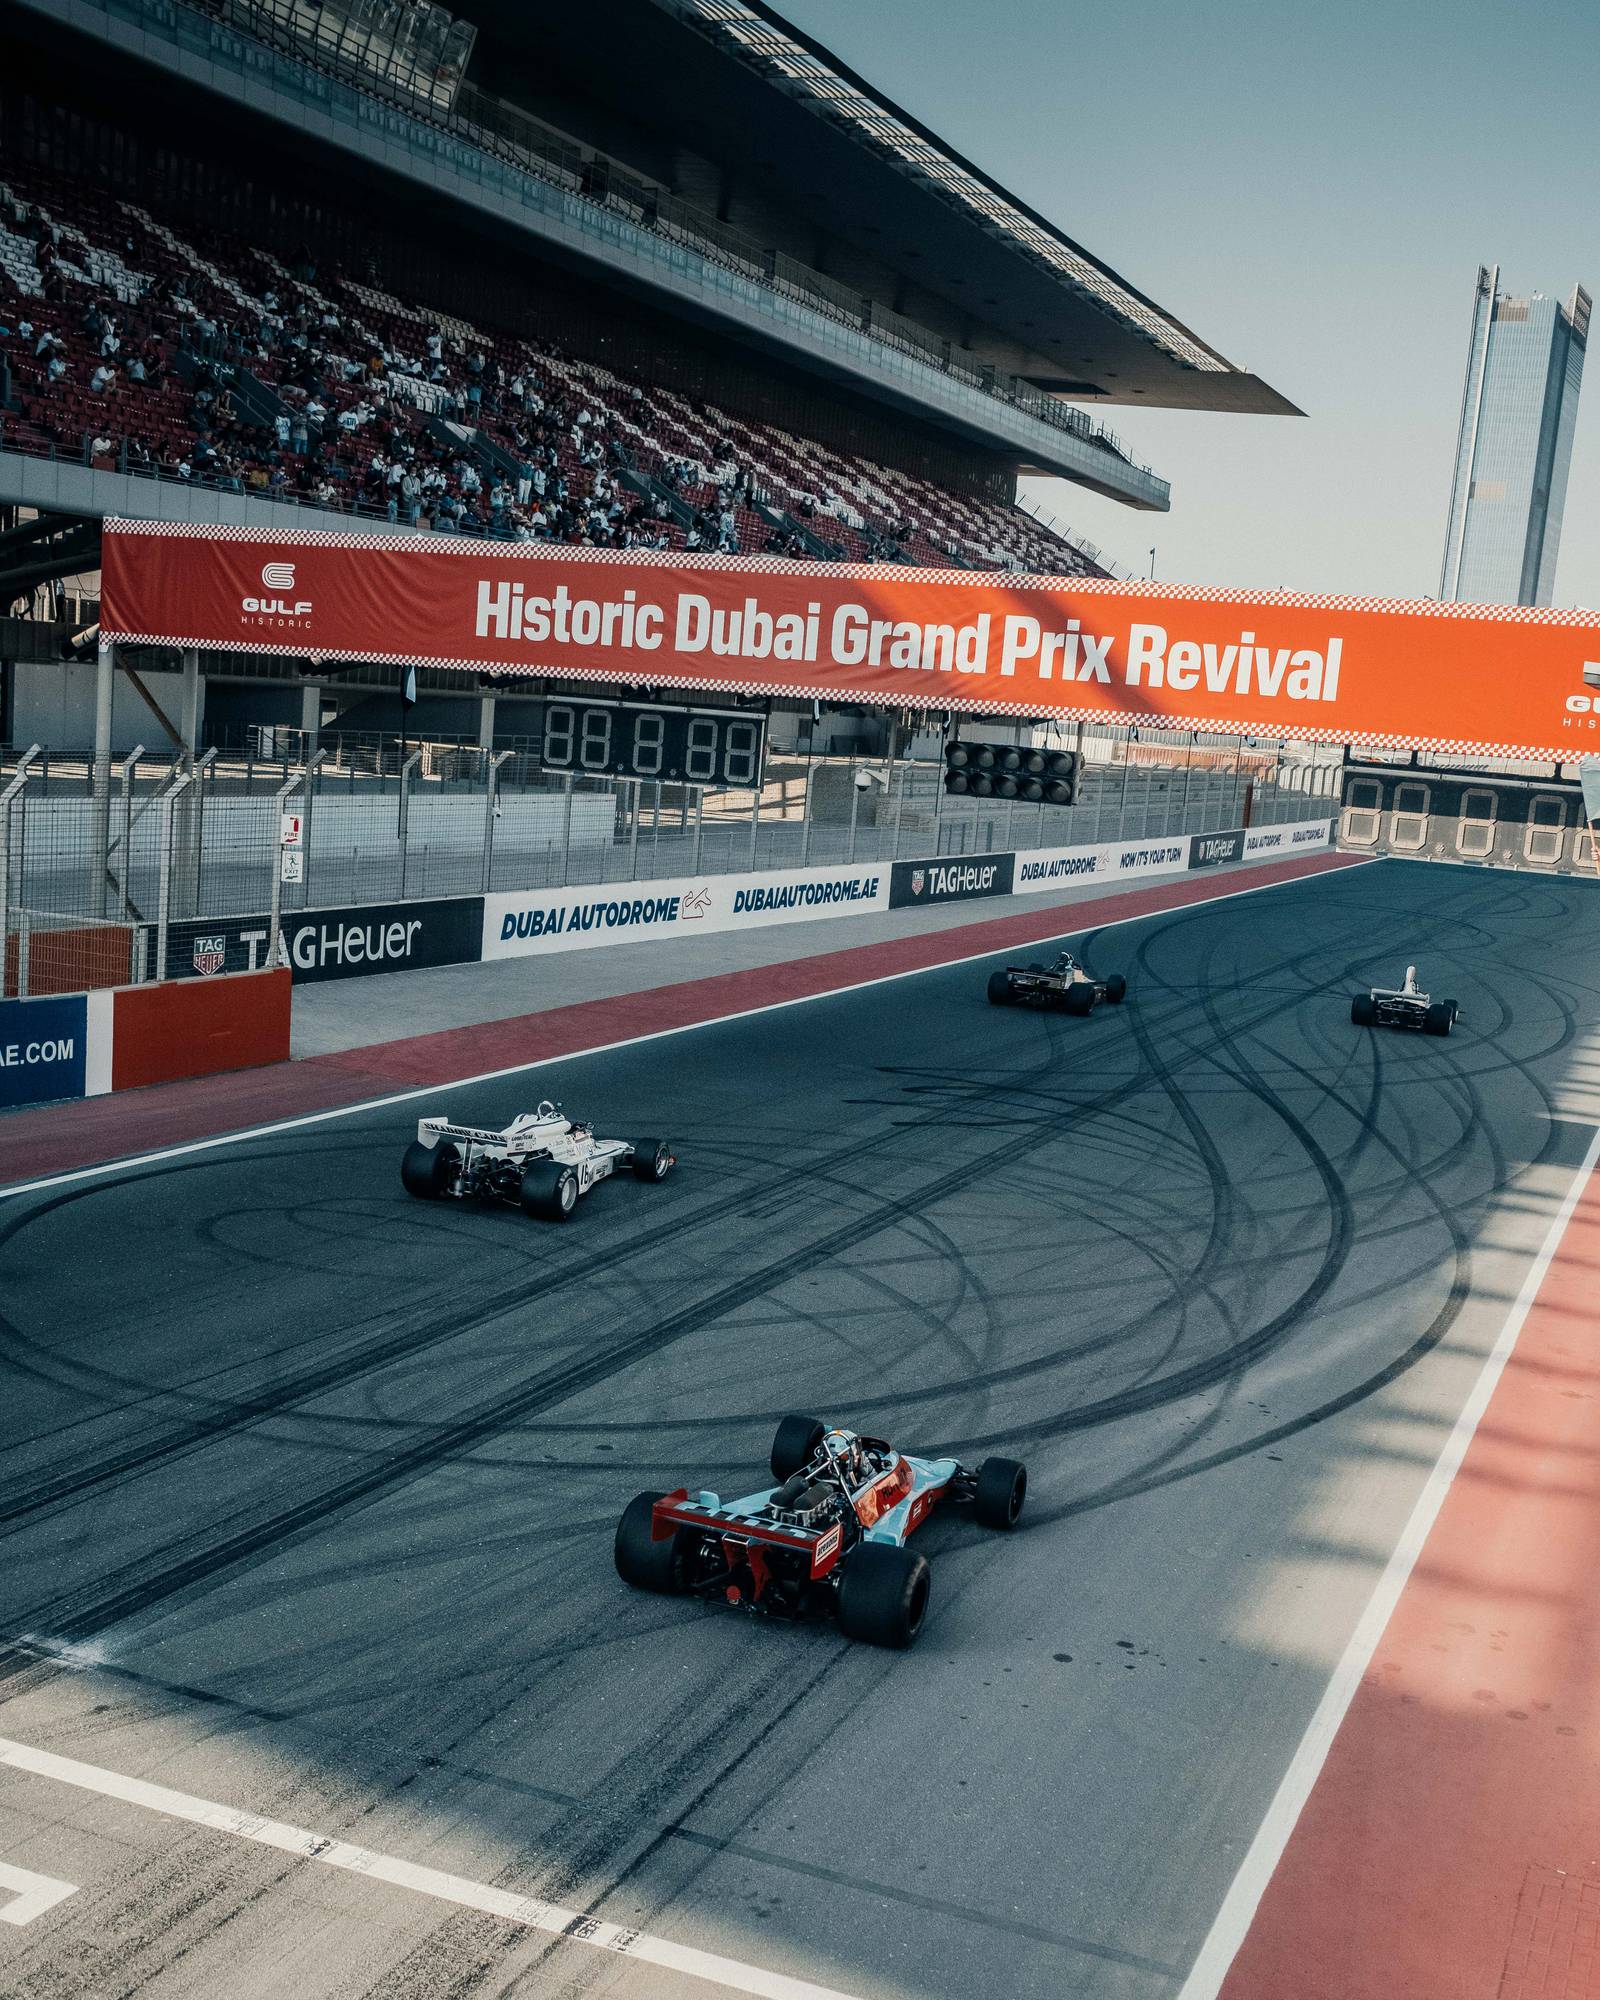 Historic Dubai Grand Prix to make roaring return in November